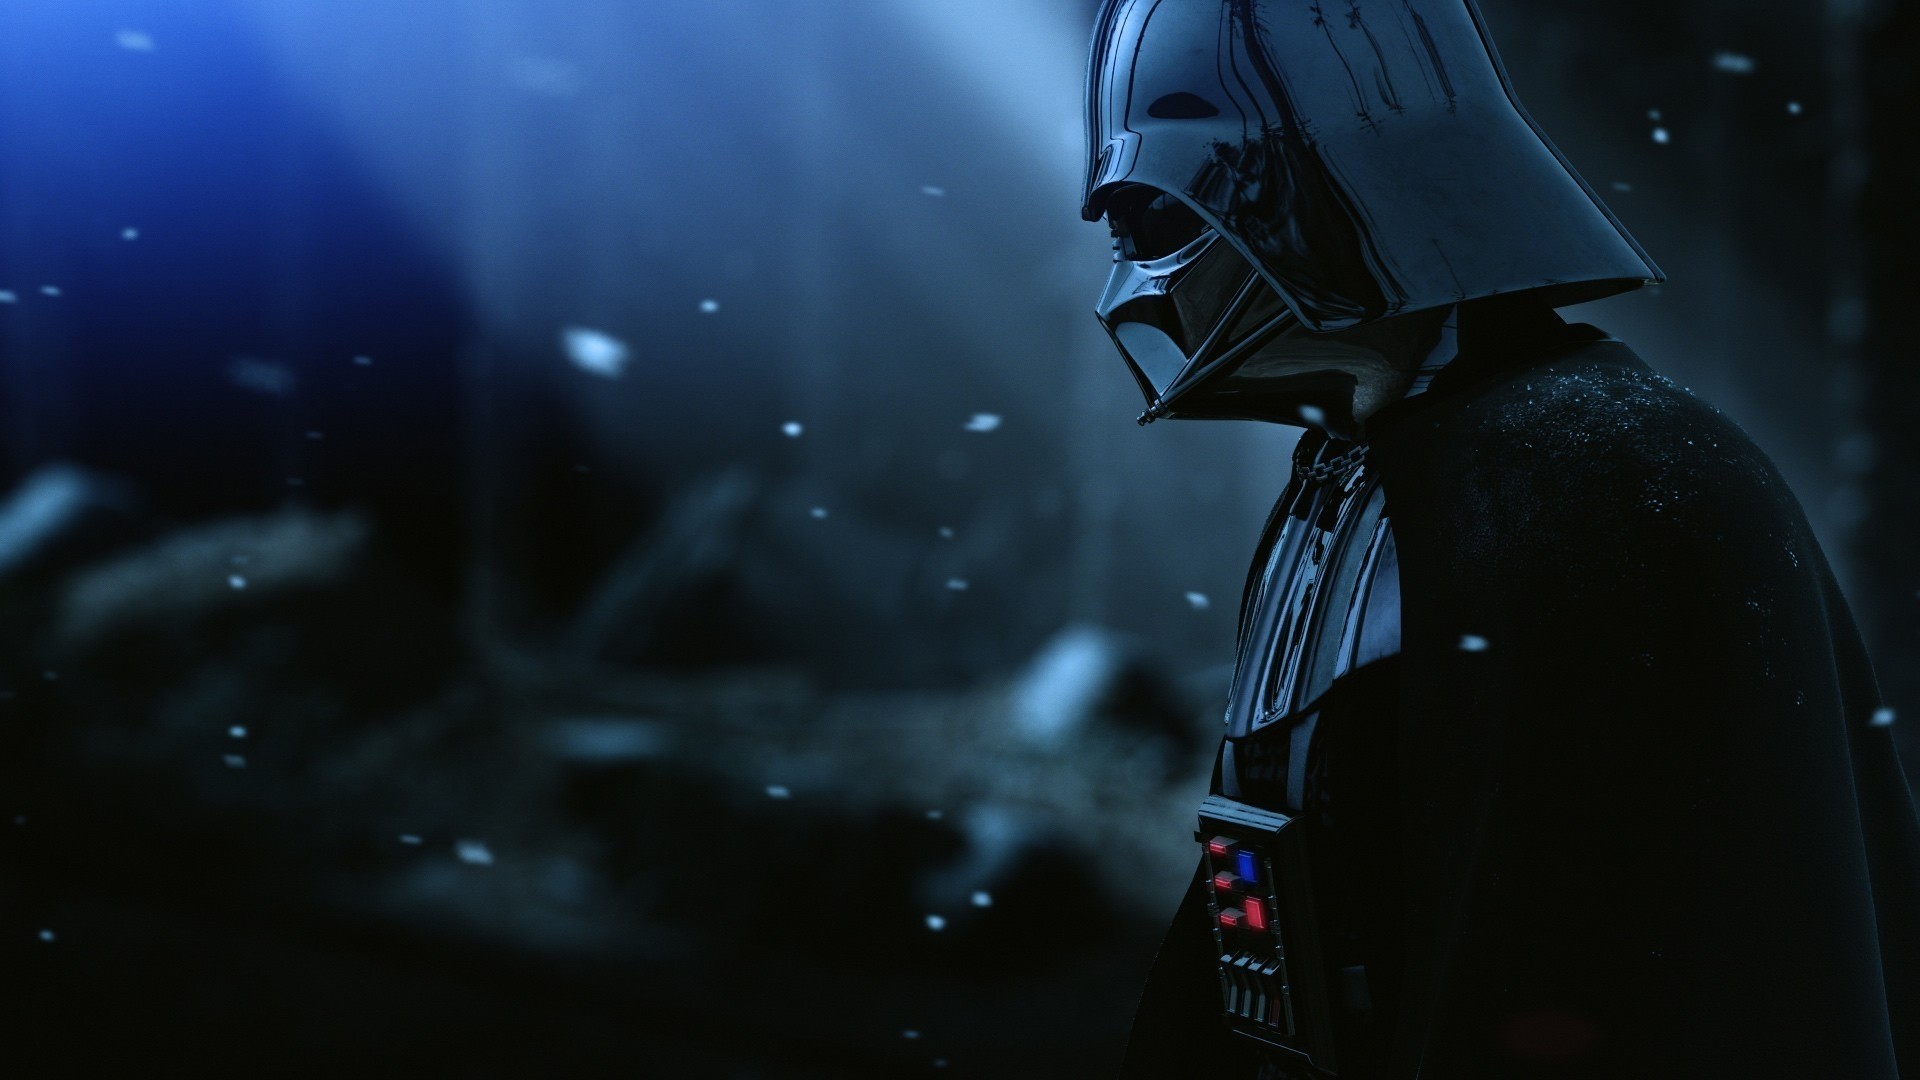 Darth Vader Wallpaper Image